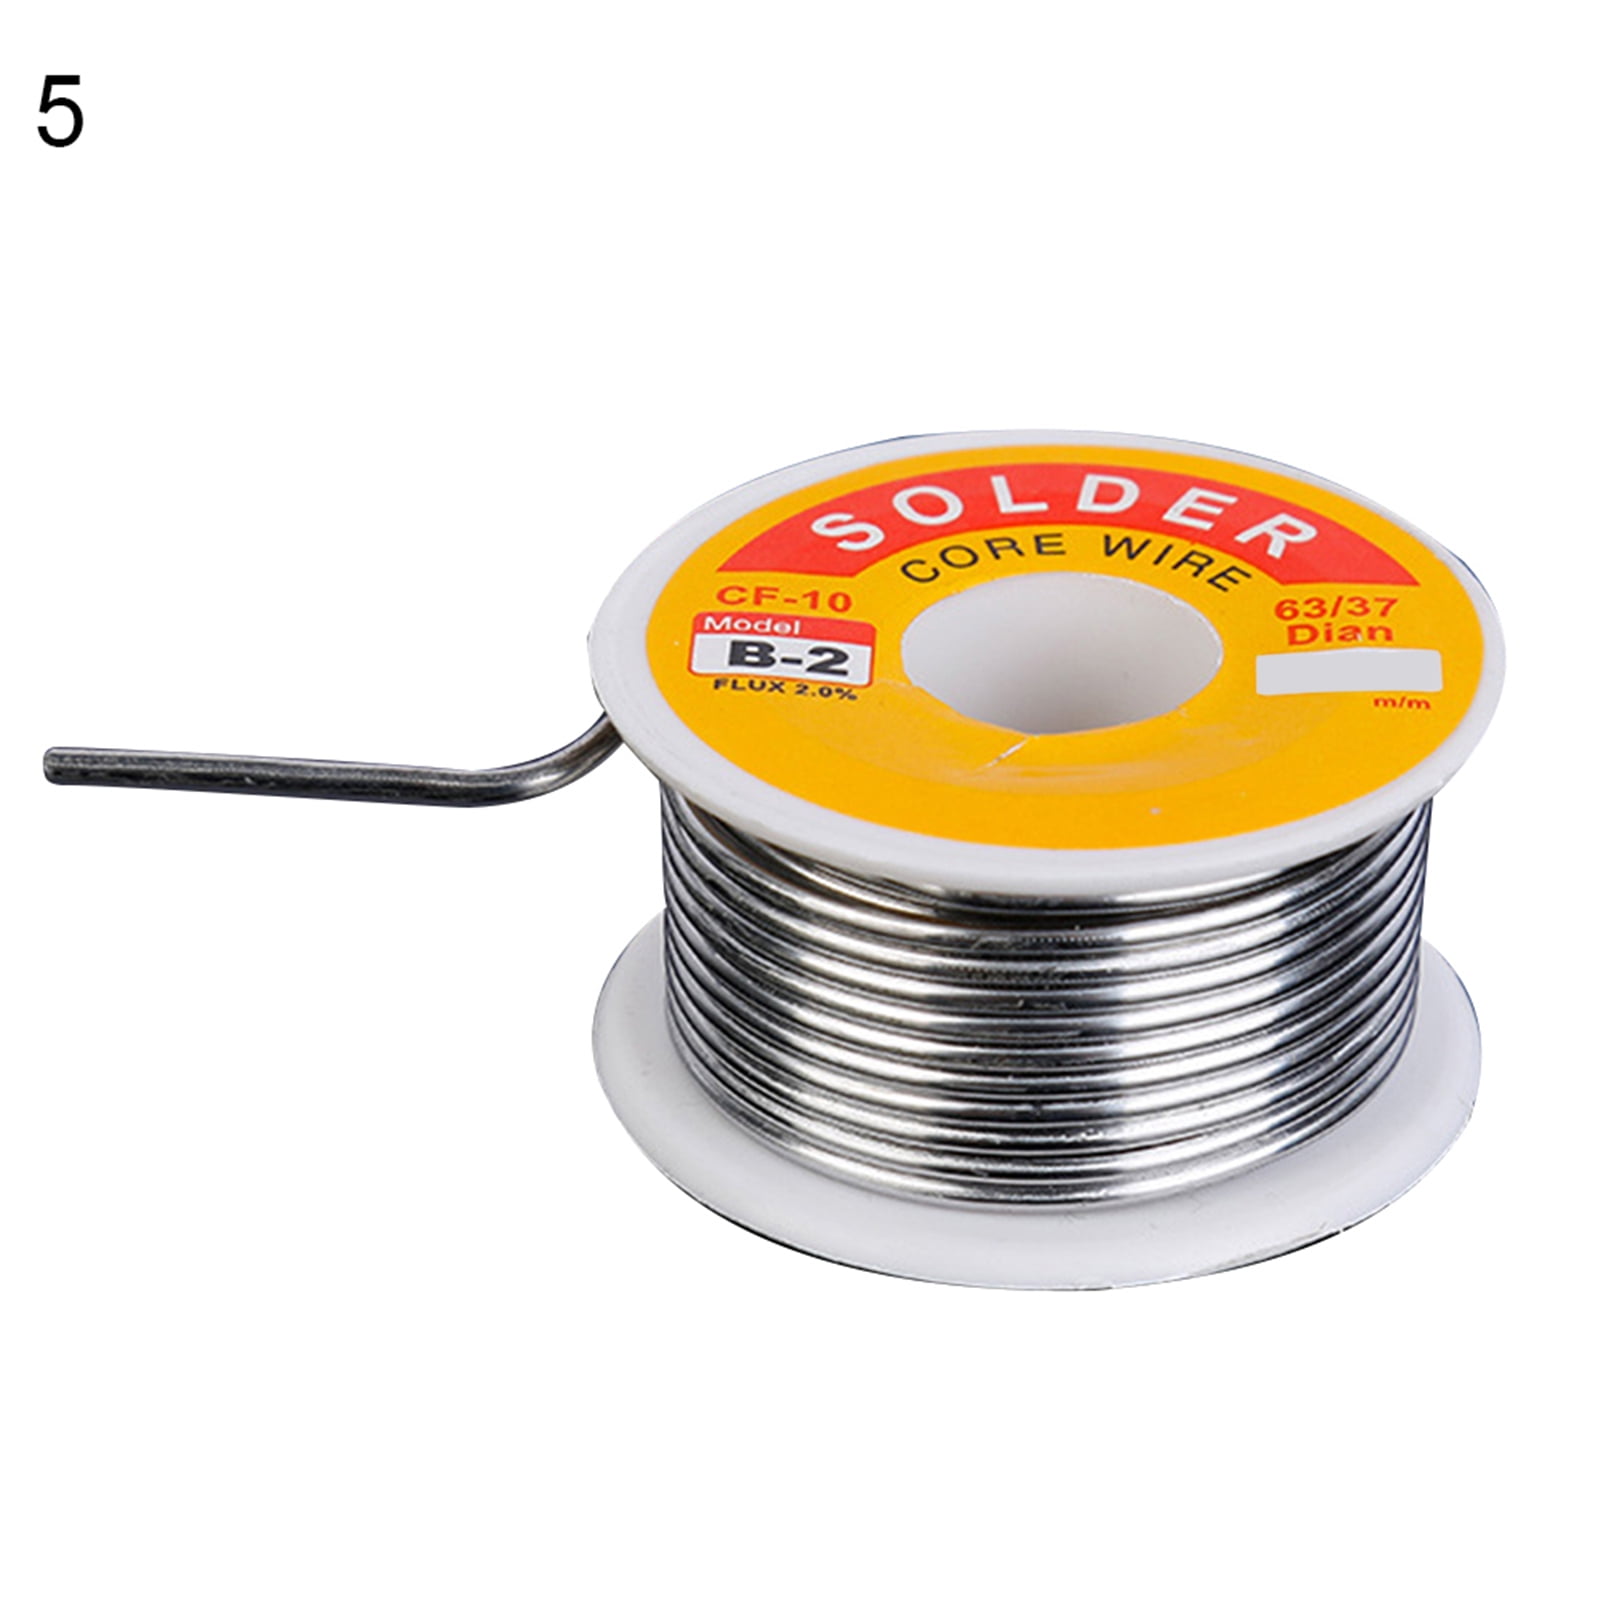 New 63/37 Tin Line Soldering 0.8mm Rosin Core Solder Flux Welding Wire Reel